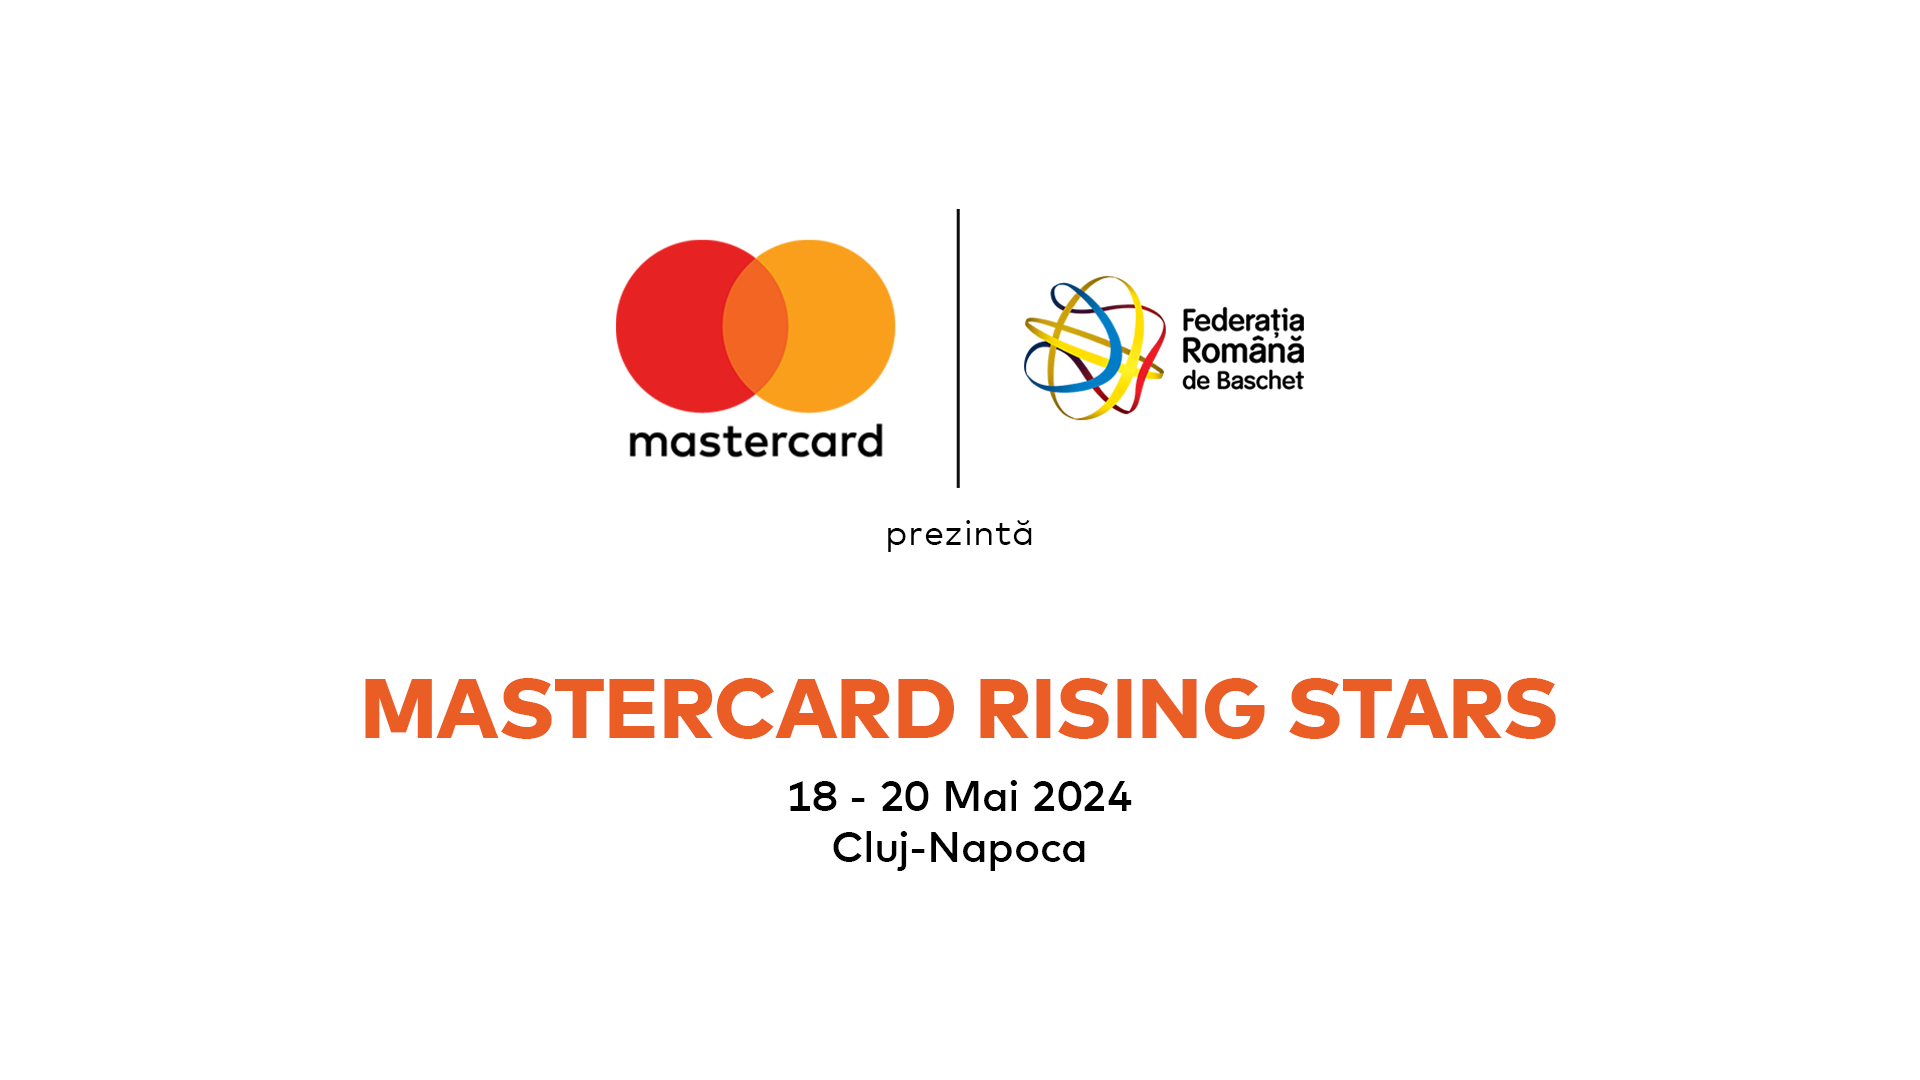 Mastercard Rising Stars – competiție regională de baschet, organizată alături de Federația Română de Baschet